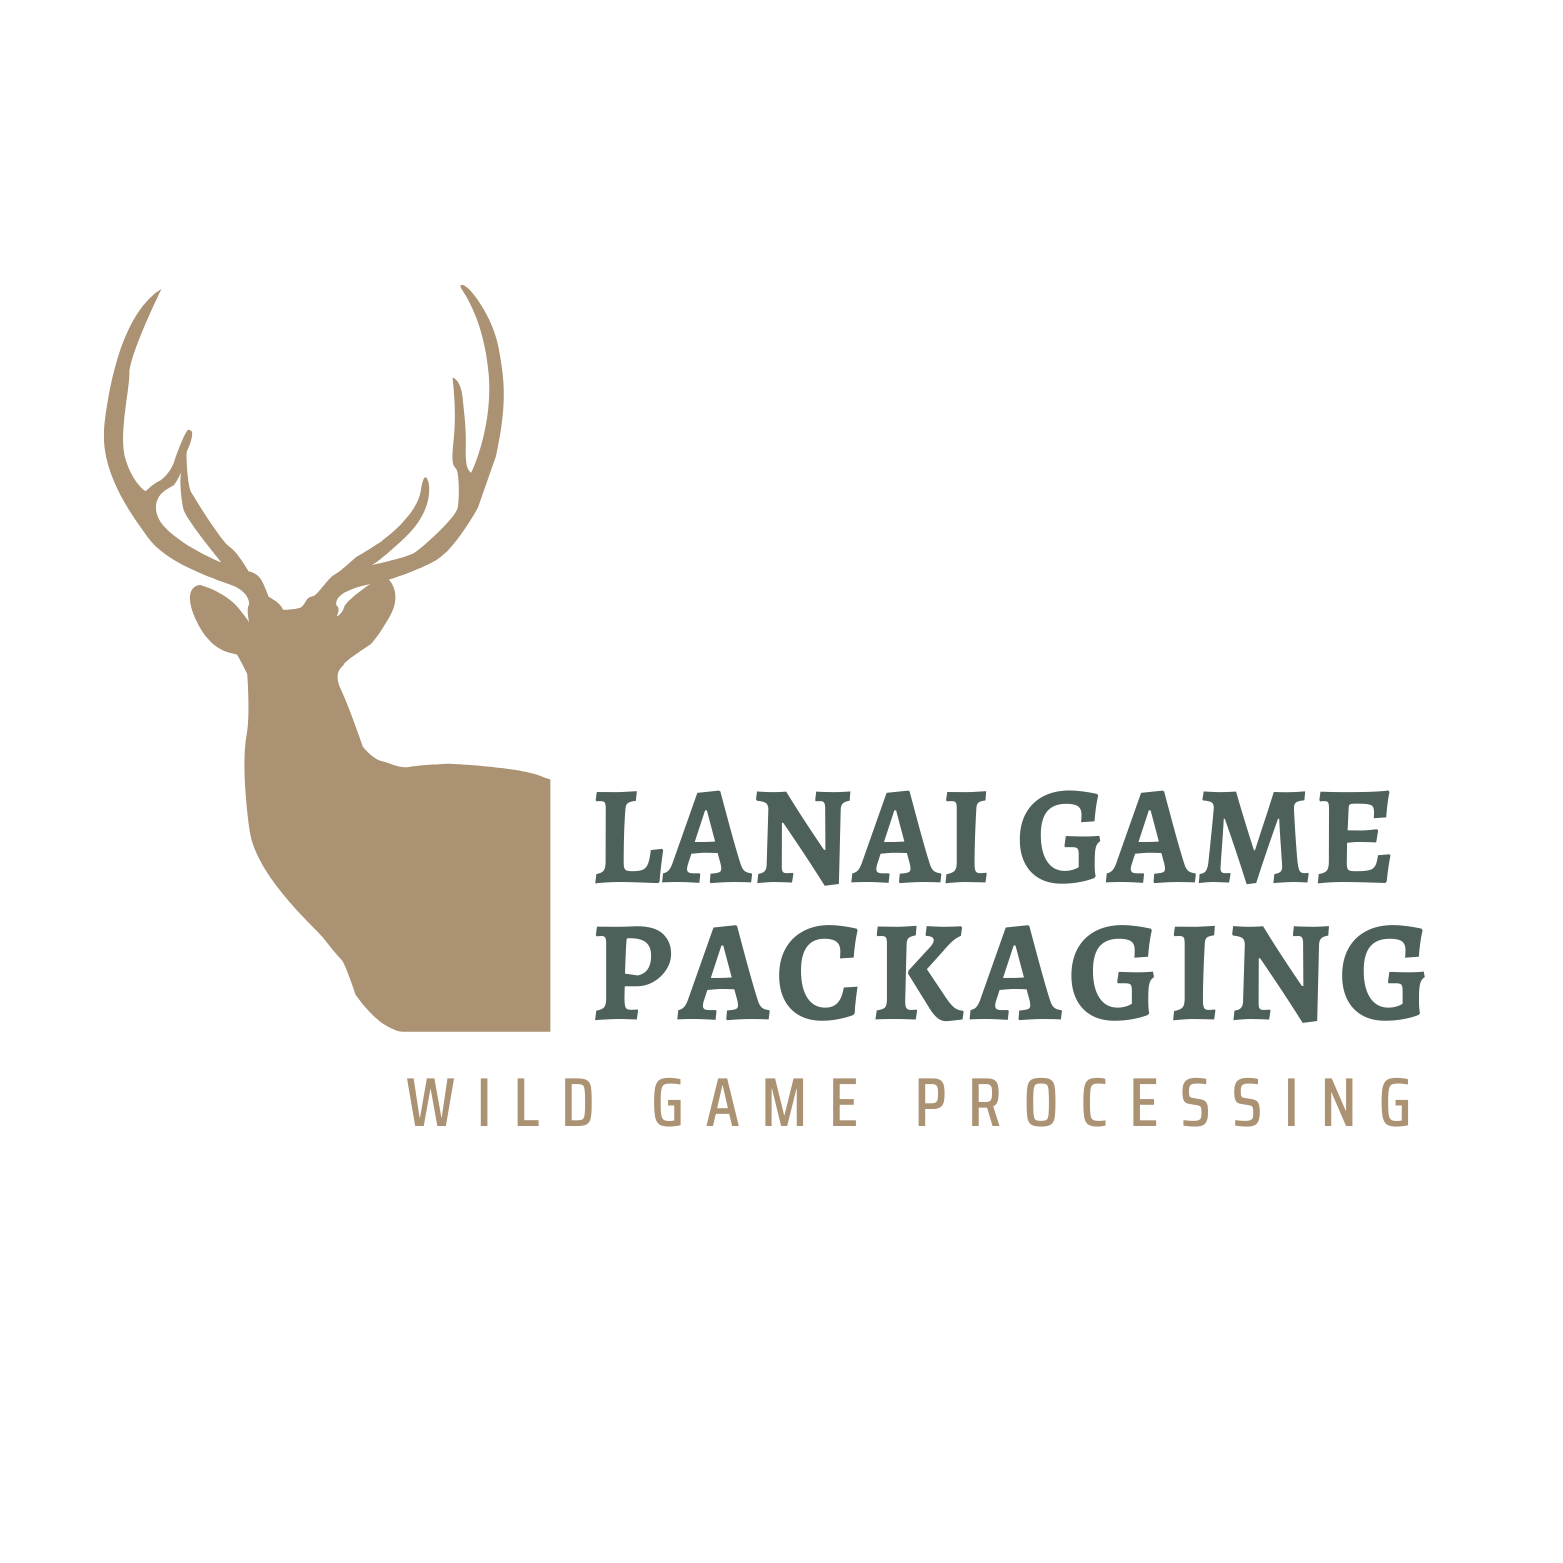 Lanai Game Packaging